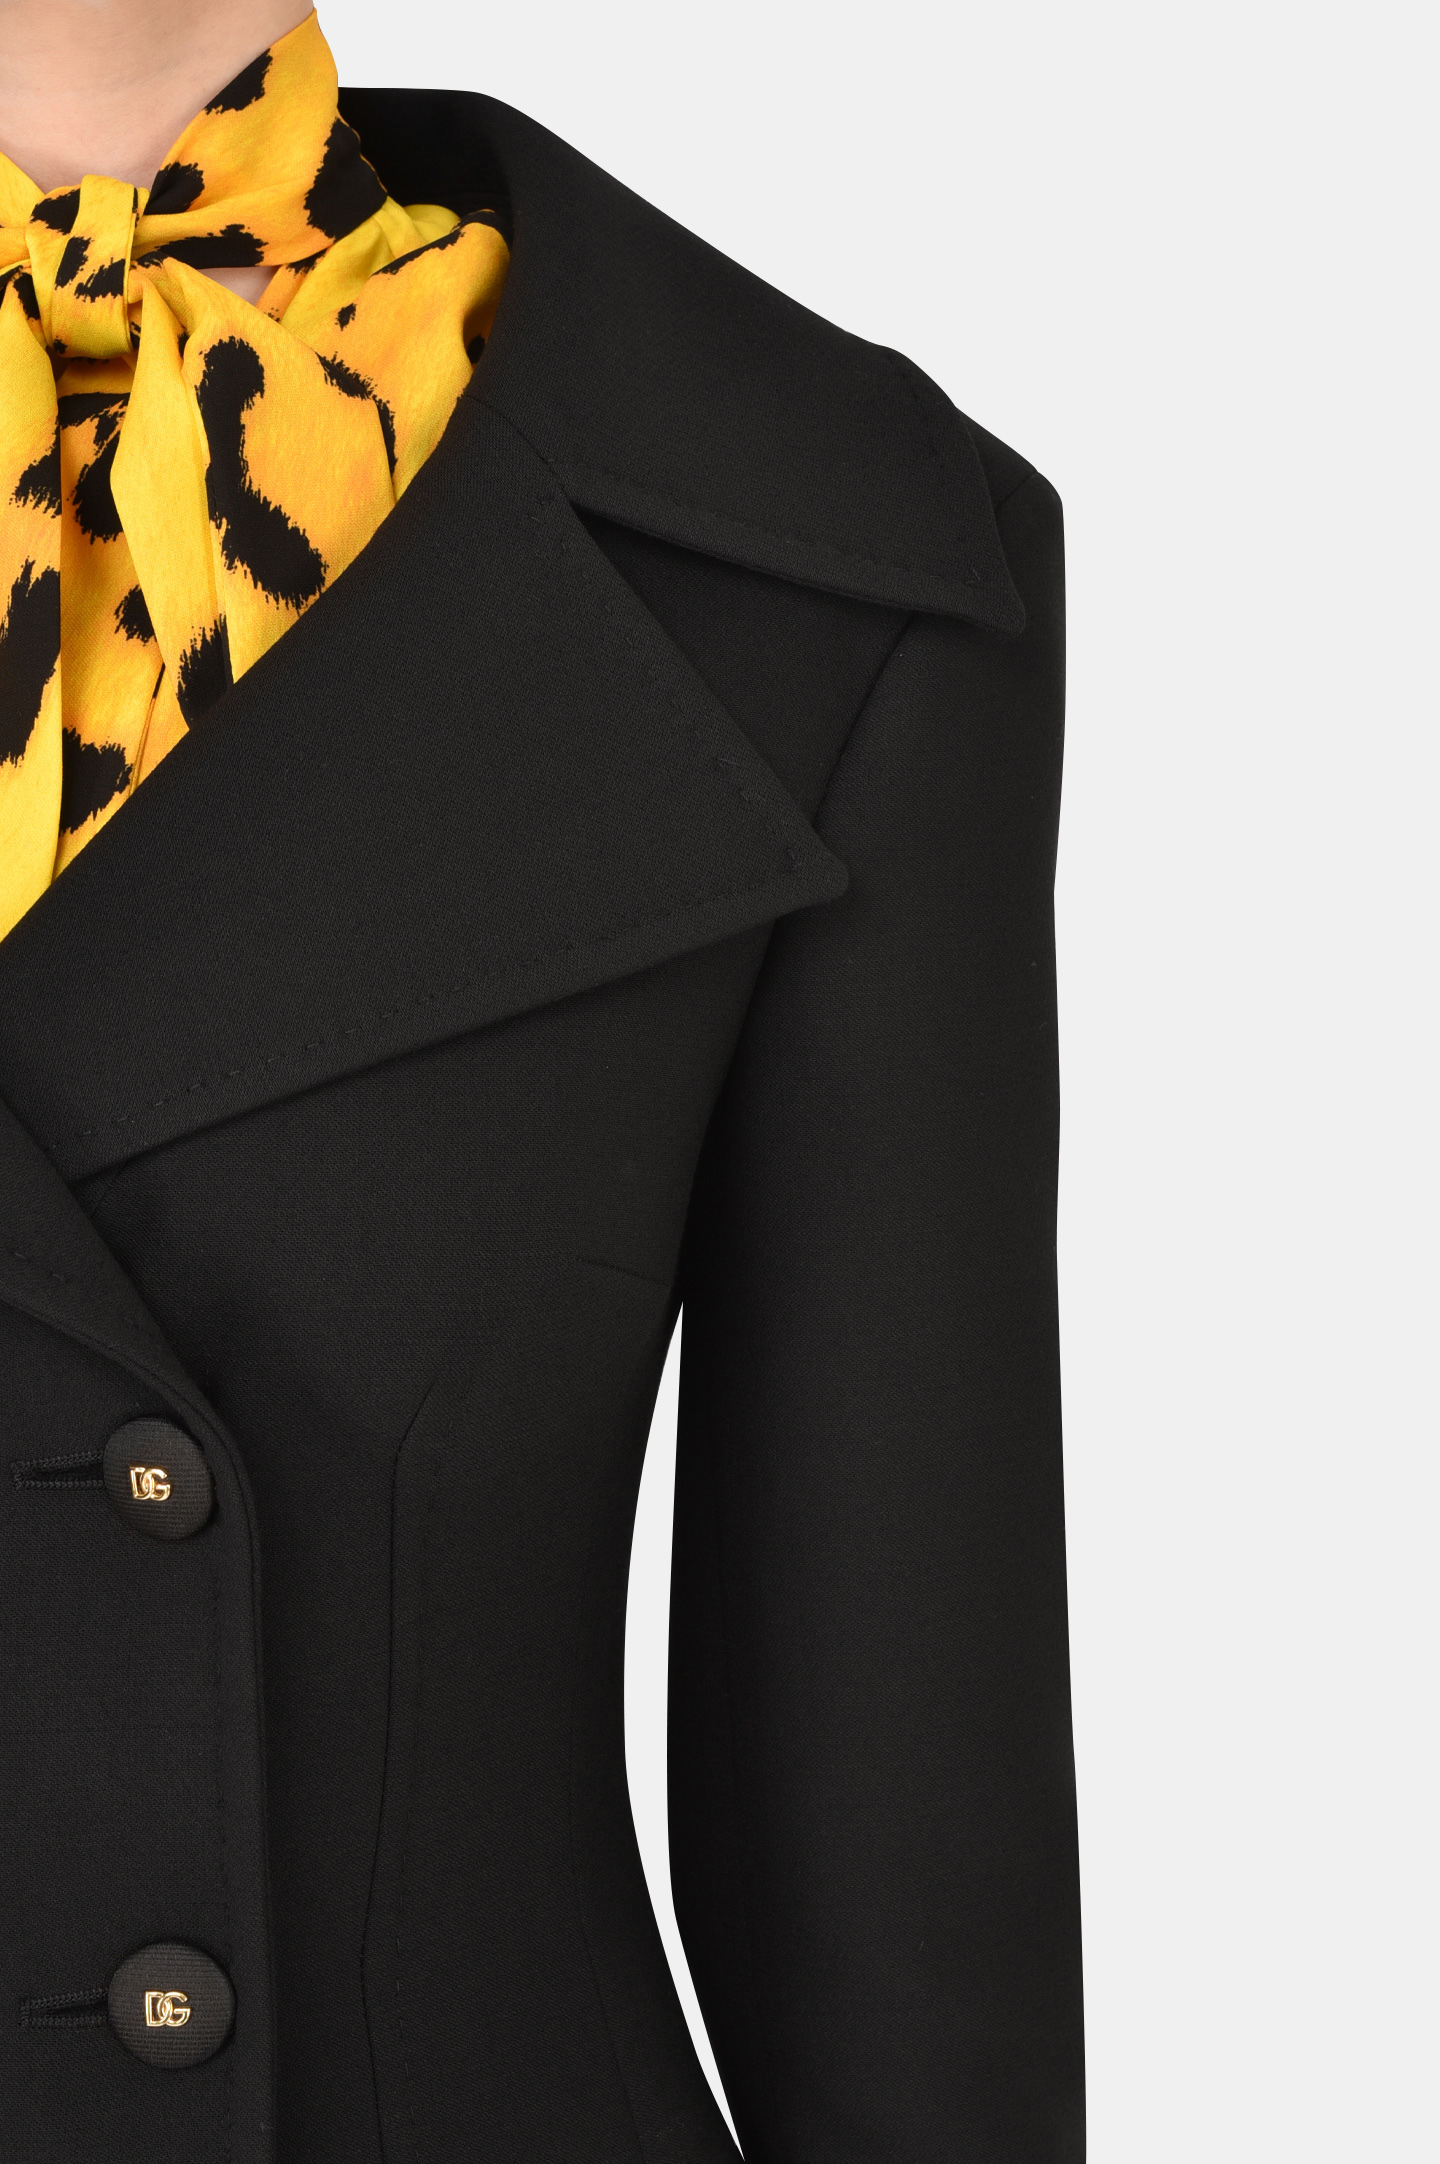 Пальто DOLCE & GABBANA F0AR3T FU2NX, цвет: Черный, Женский